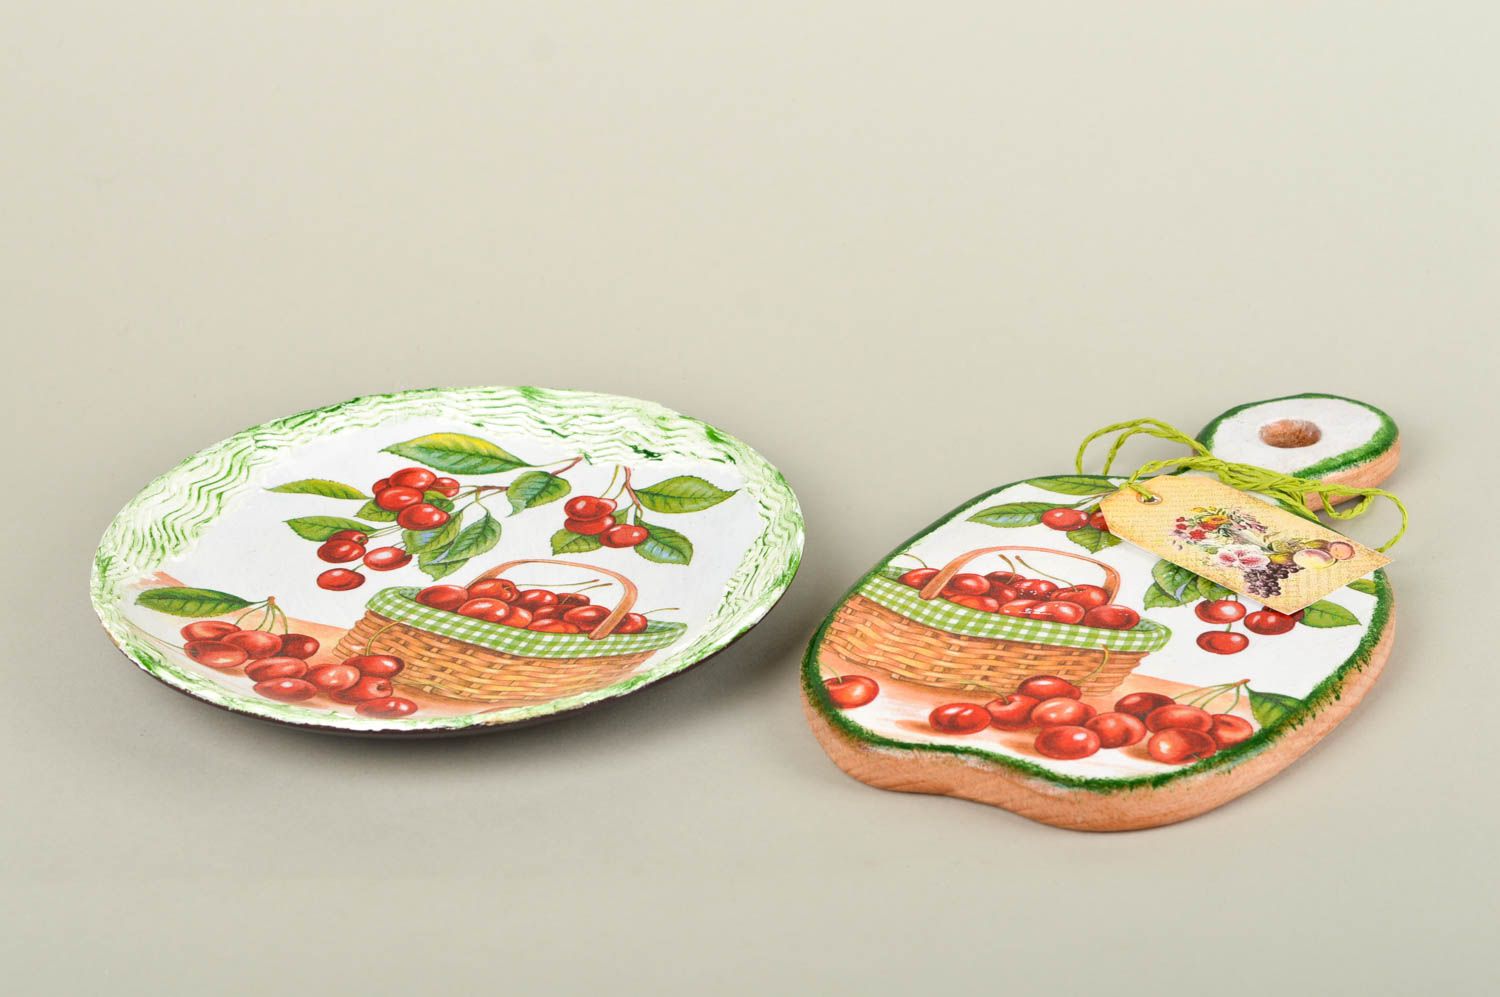 Набор посуды ручной работы глиняная тарелка декоративная разделочная доска Вишни фото 2